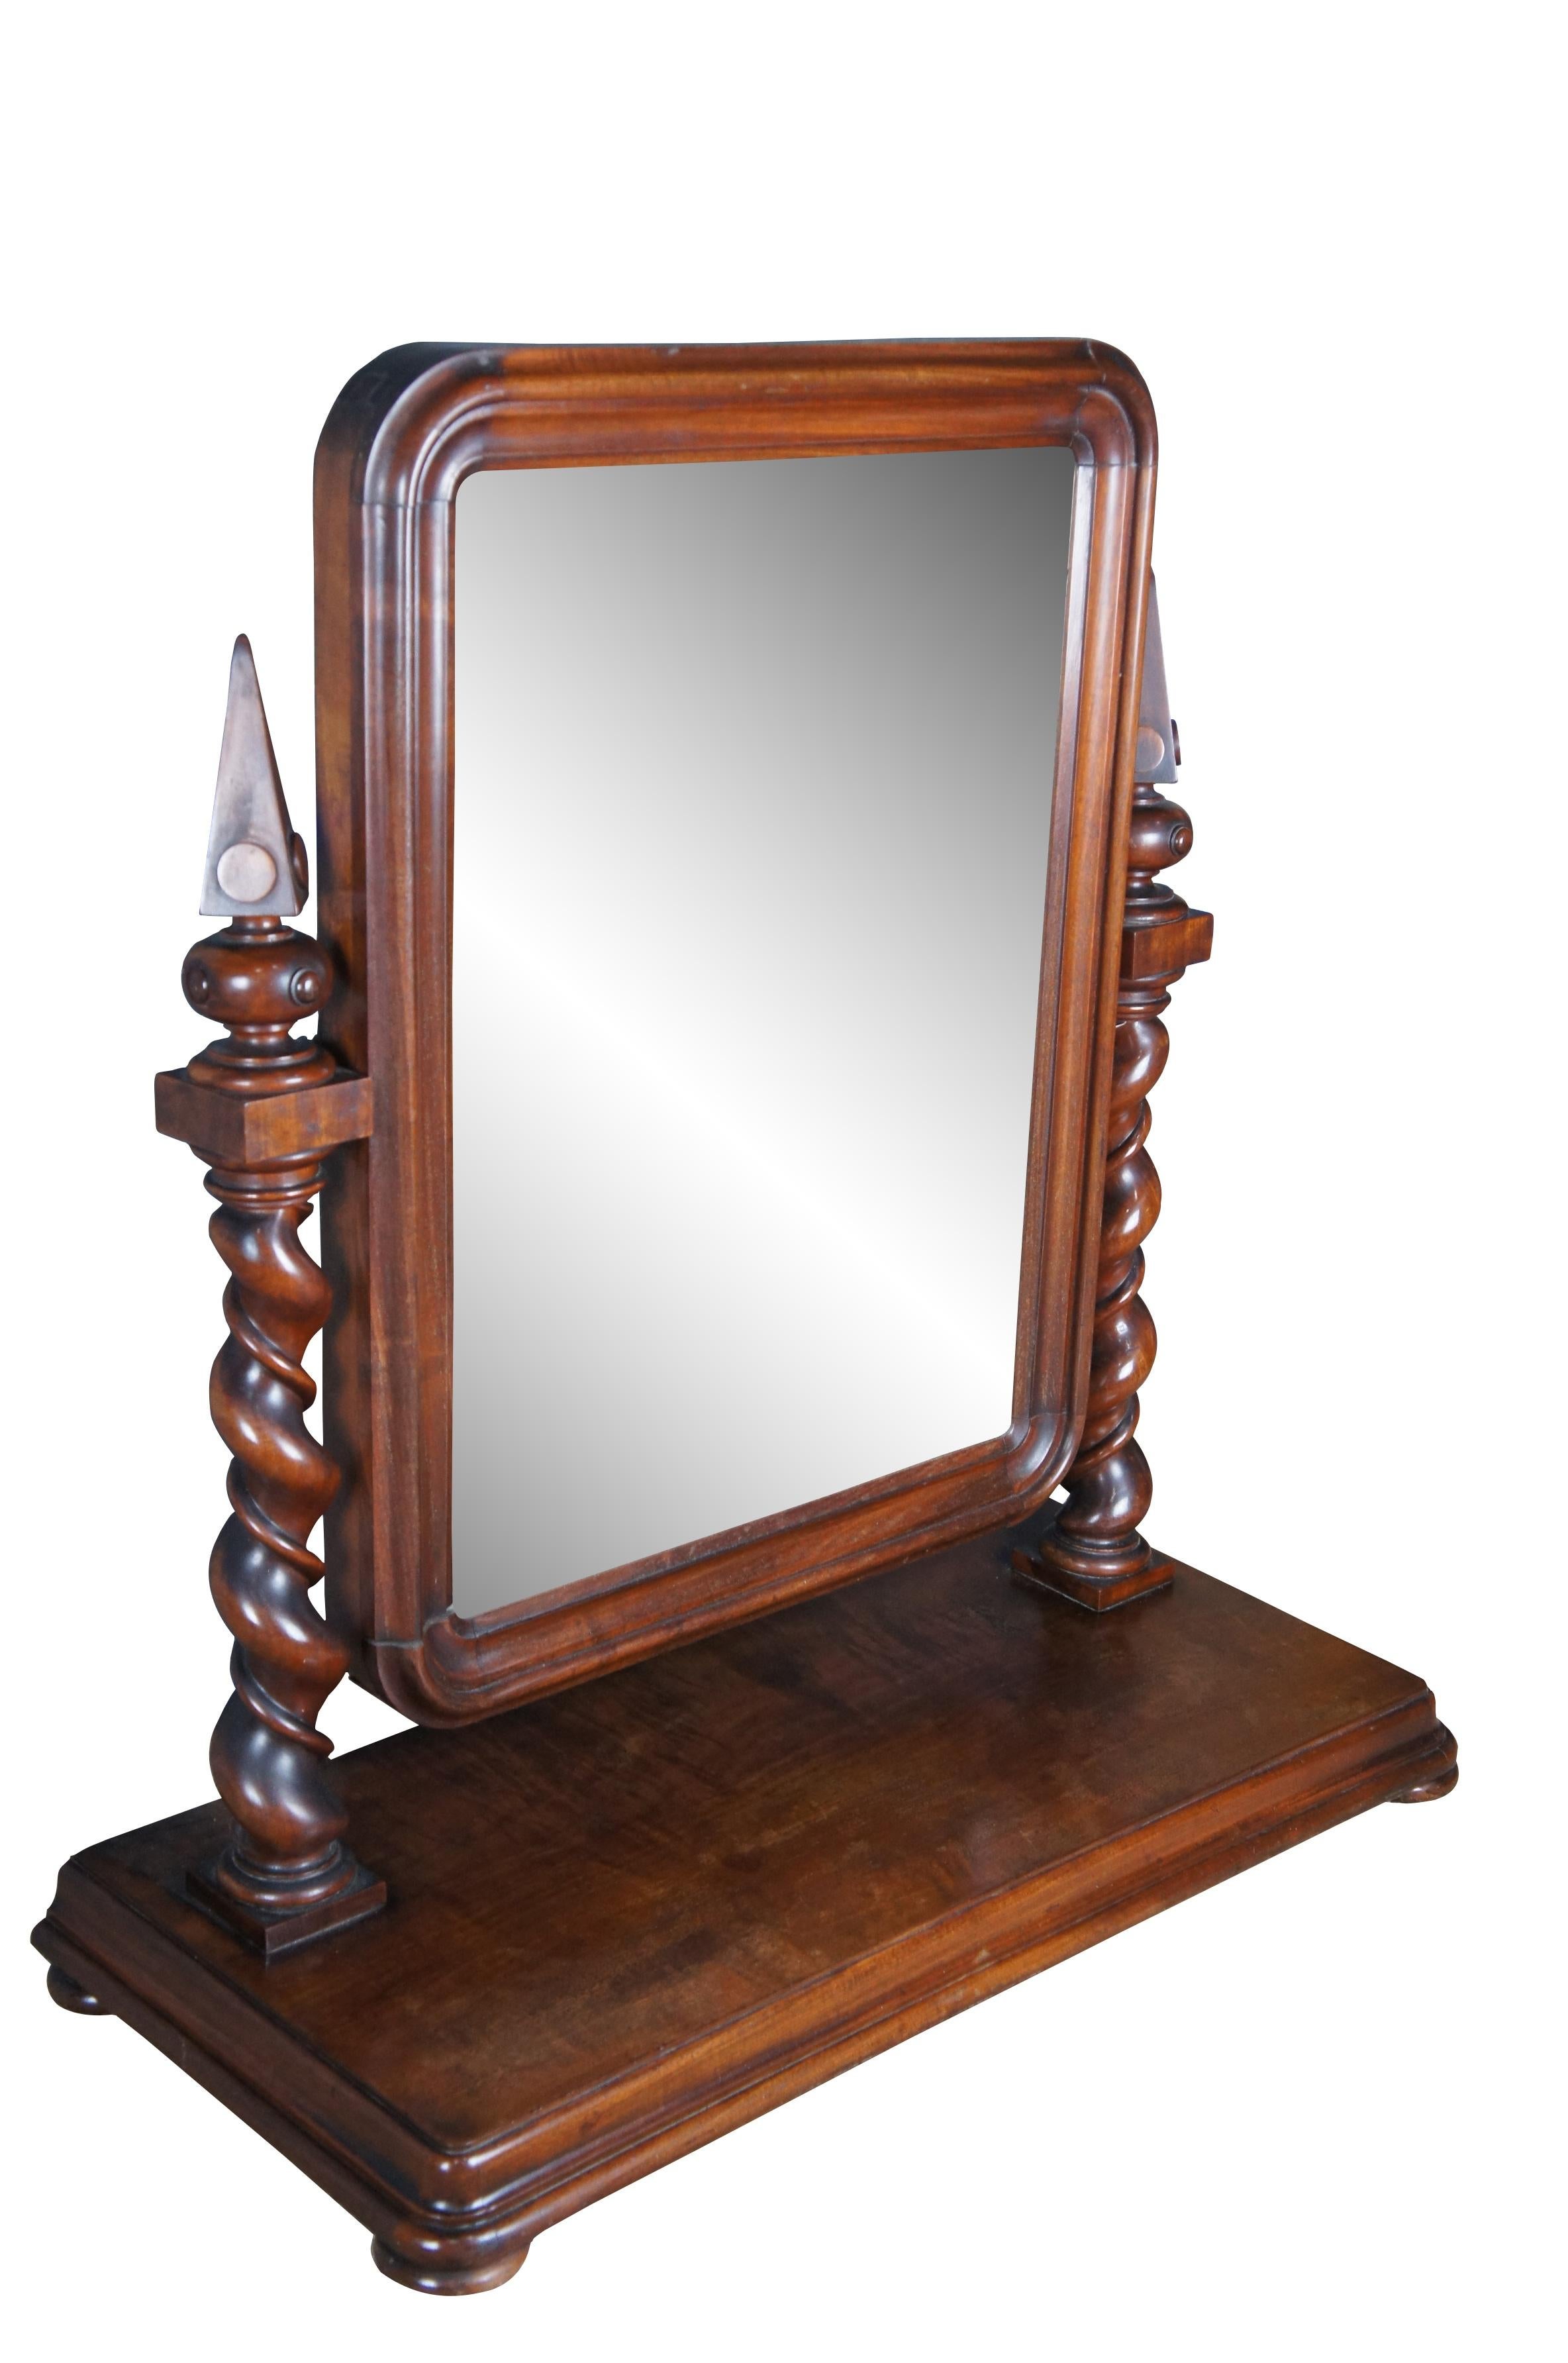 Impressionnant miroir de coiffeuse pour homme de style Empire anglais du XIXe siècle (vers les années 1880). Fabriqué en acajou avec un cadre en bois biseauté soutenu par des montants exceptionnels en torsion d'orge avec des épis de faîtage en forme